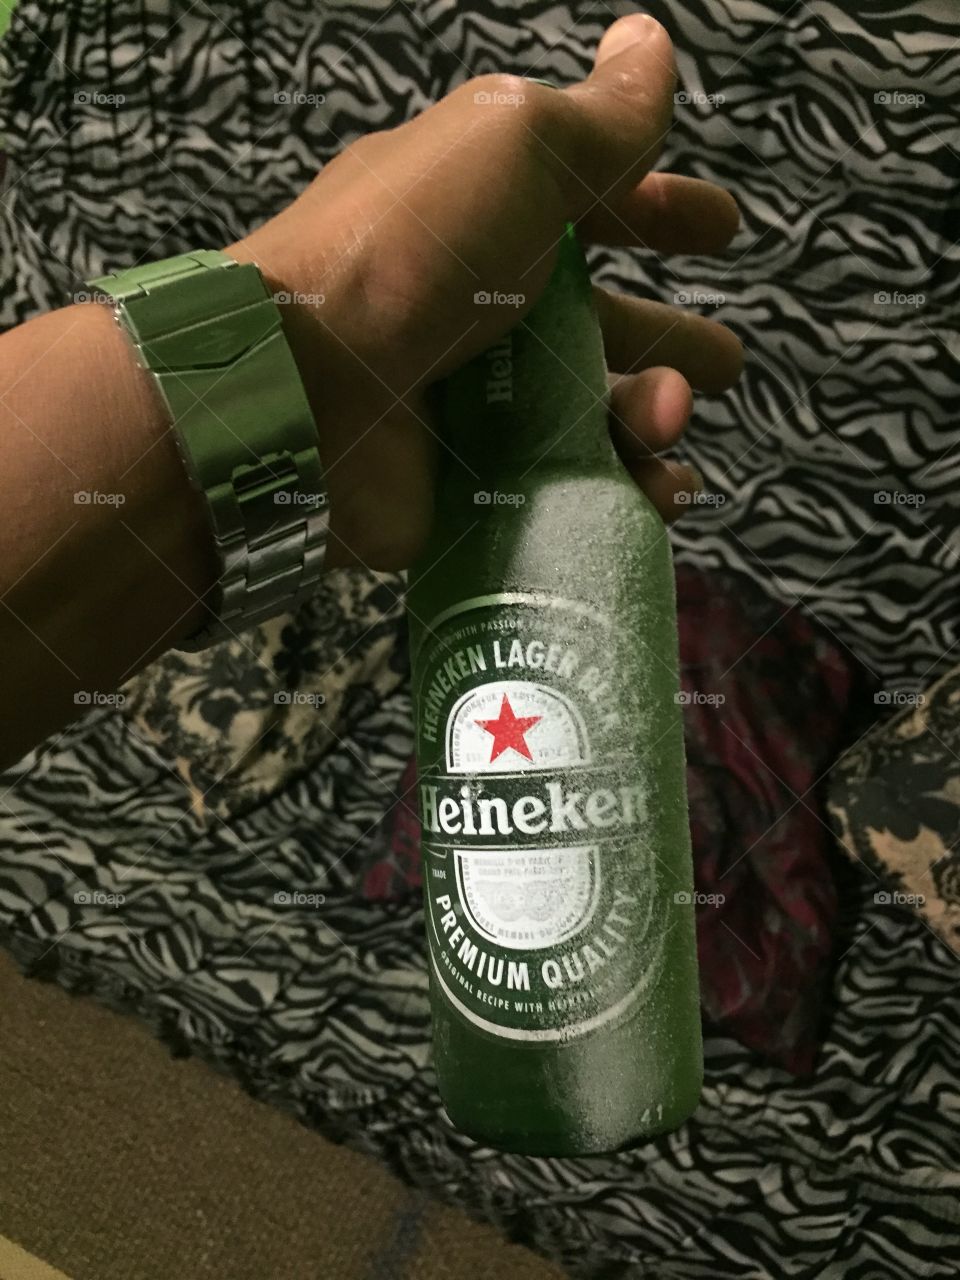 Eu amo uma Heineken bem gelado